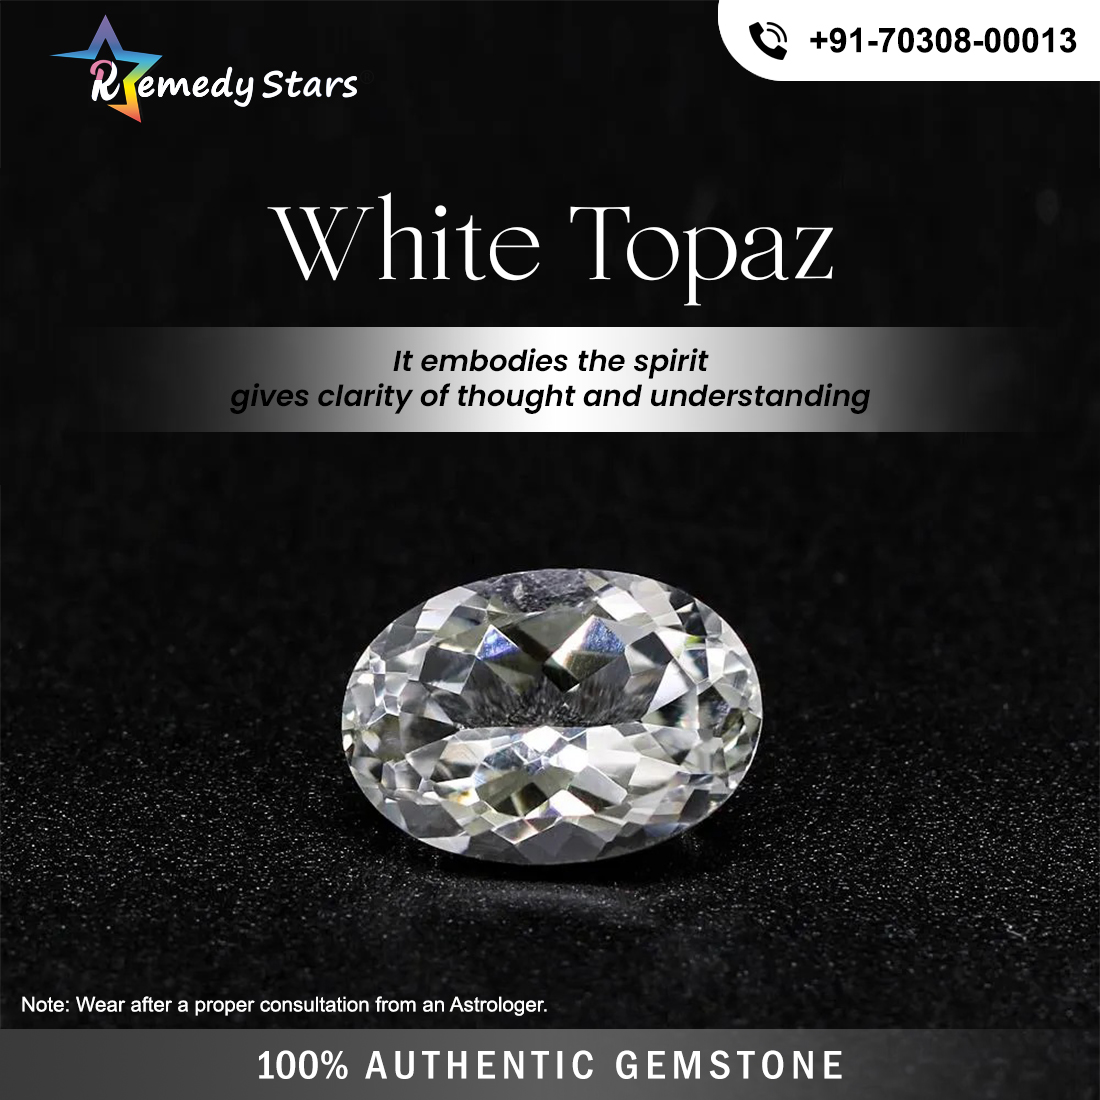 White Topaz